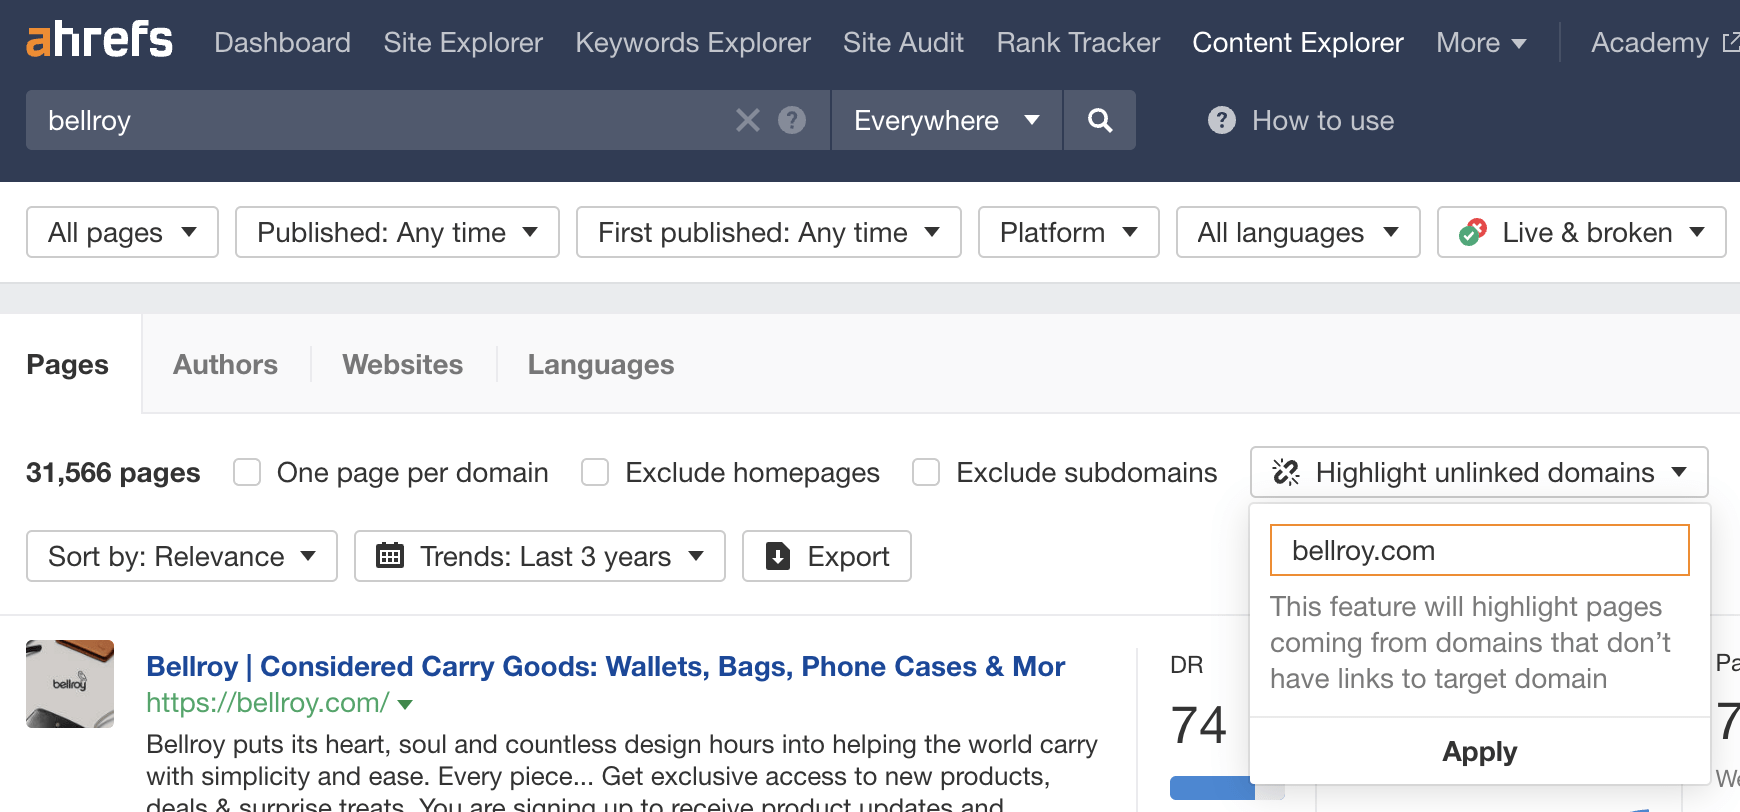 在 Content Explorer（内容分析）中为 Bellroy 找到了未链接的提及的页面